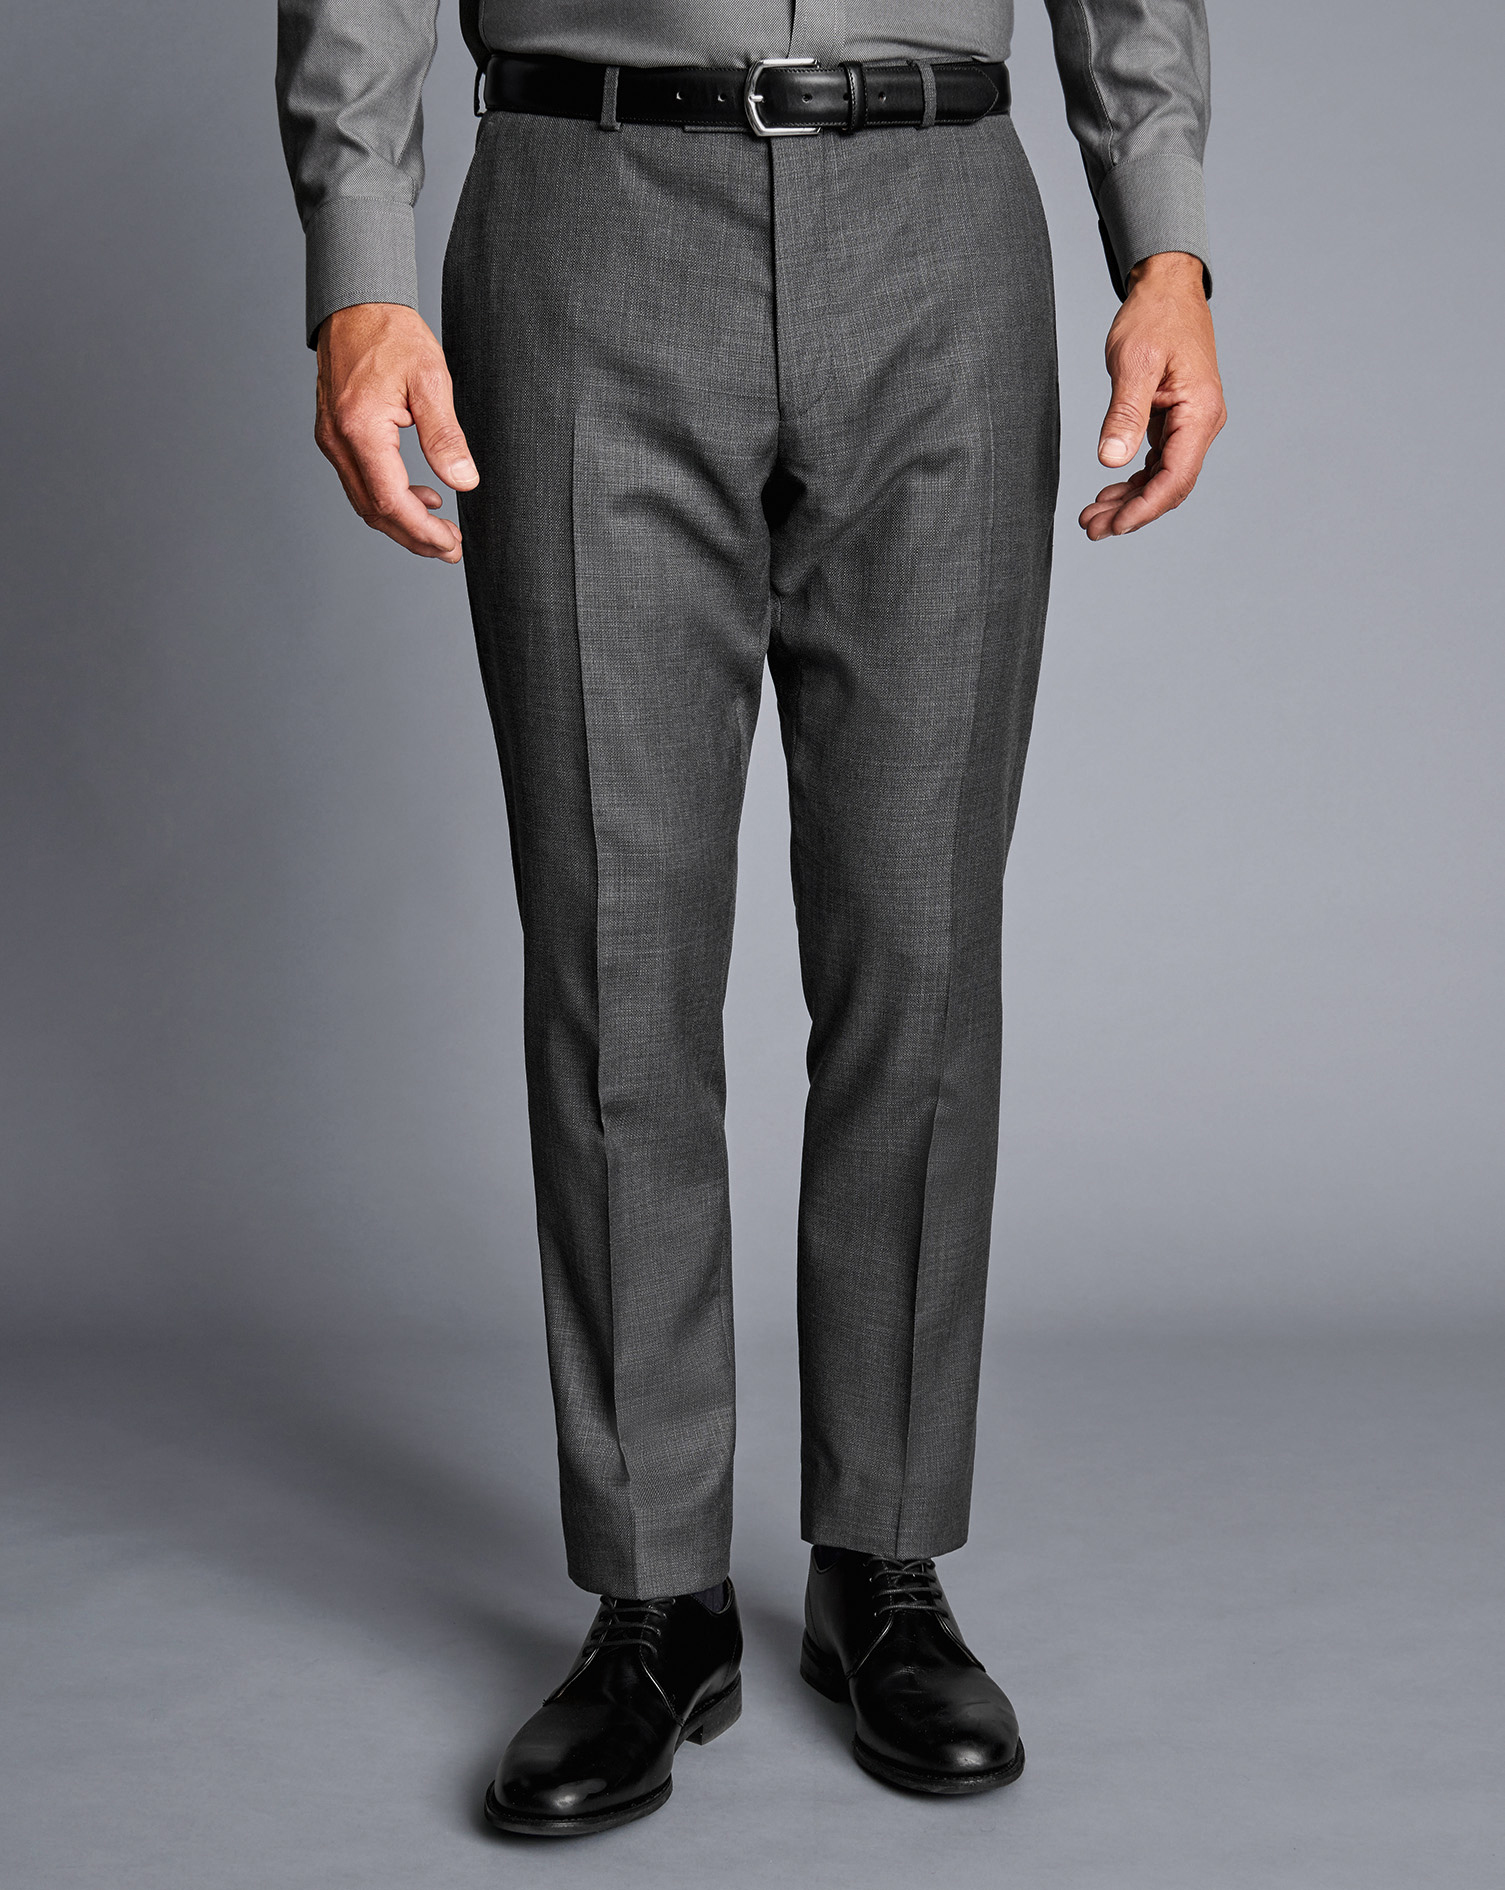 Men's Charles Tyrwhitt Italian Luxury Suit Trousers - Grey Size 38/38 Wool
